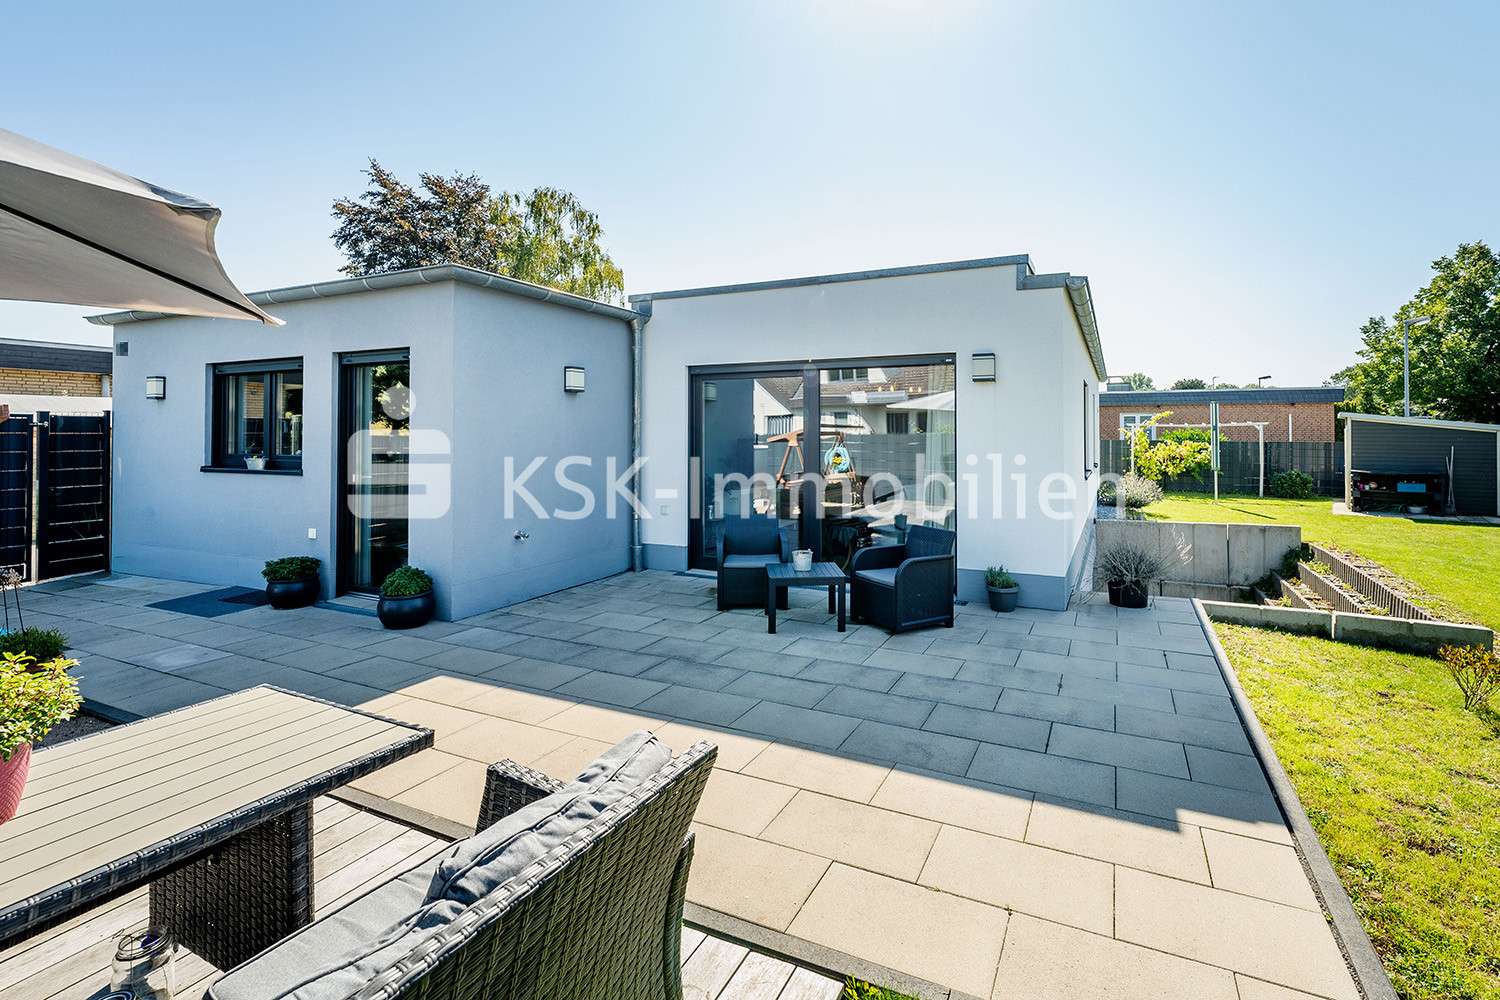 122254 Terrasse und Garten - Bungalow in 50259 Pulheim mit 200m² kaufen